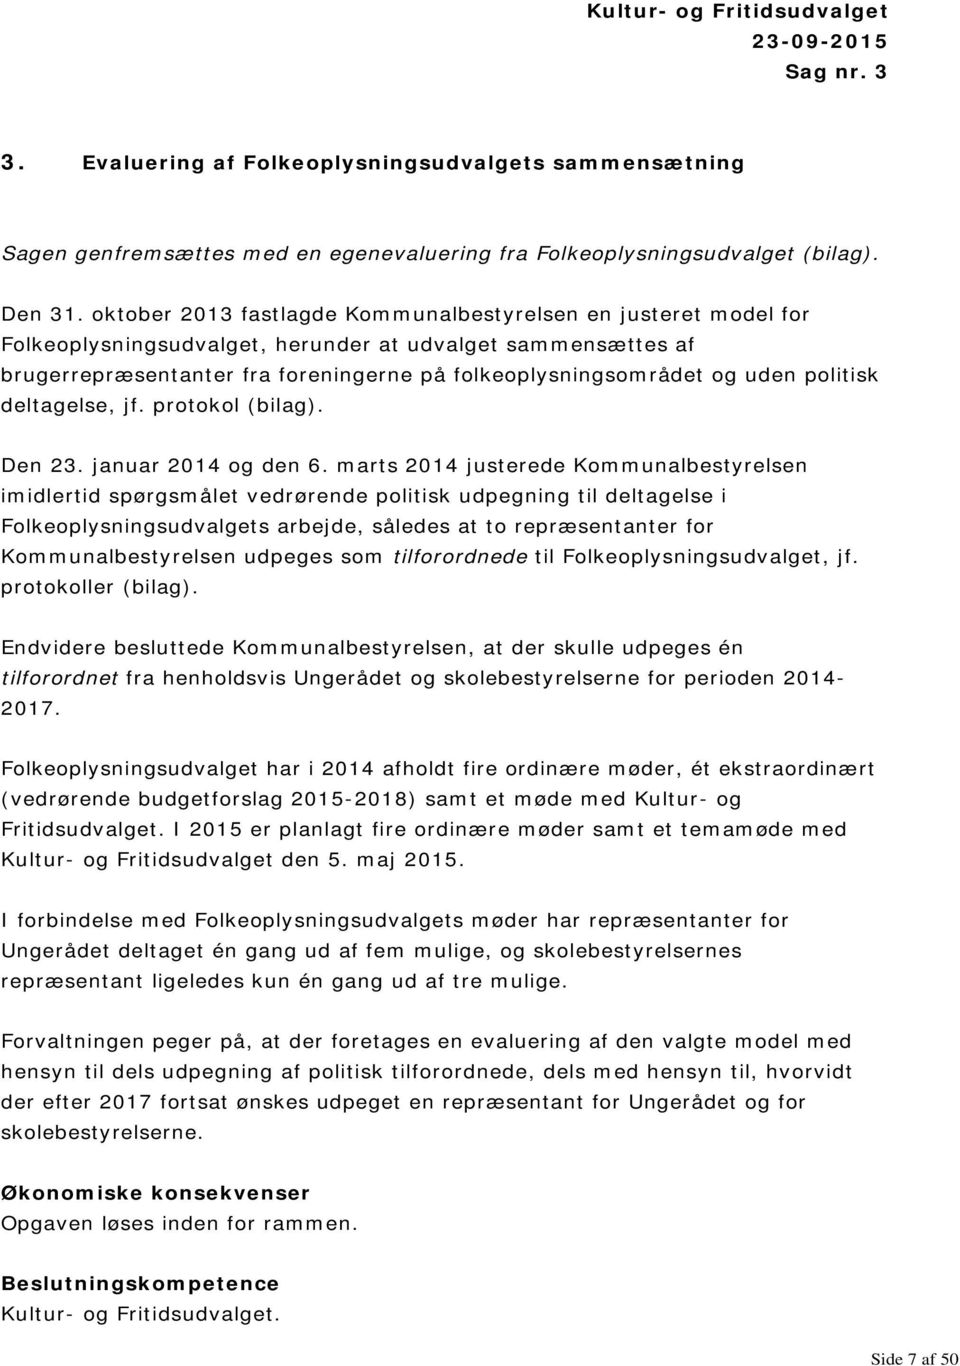 politisk deltagelse, jf. protokol (bilag). Den 23. januar 2014 og den 6.